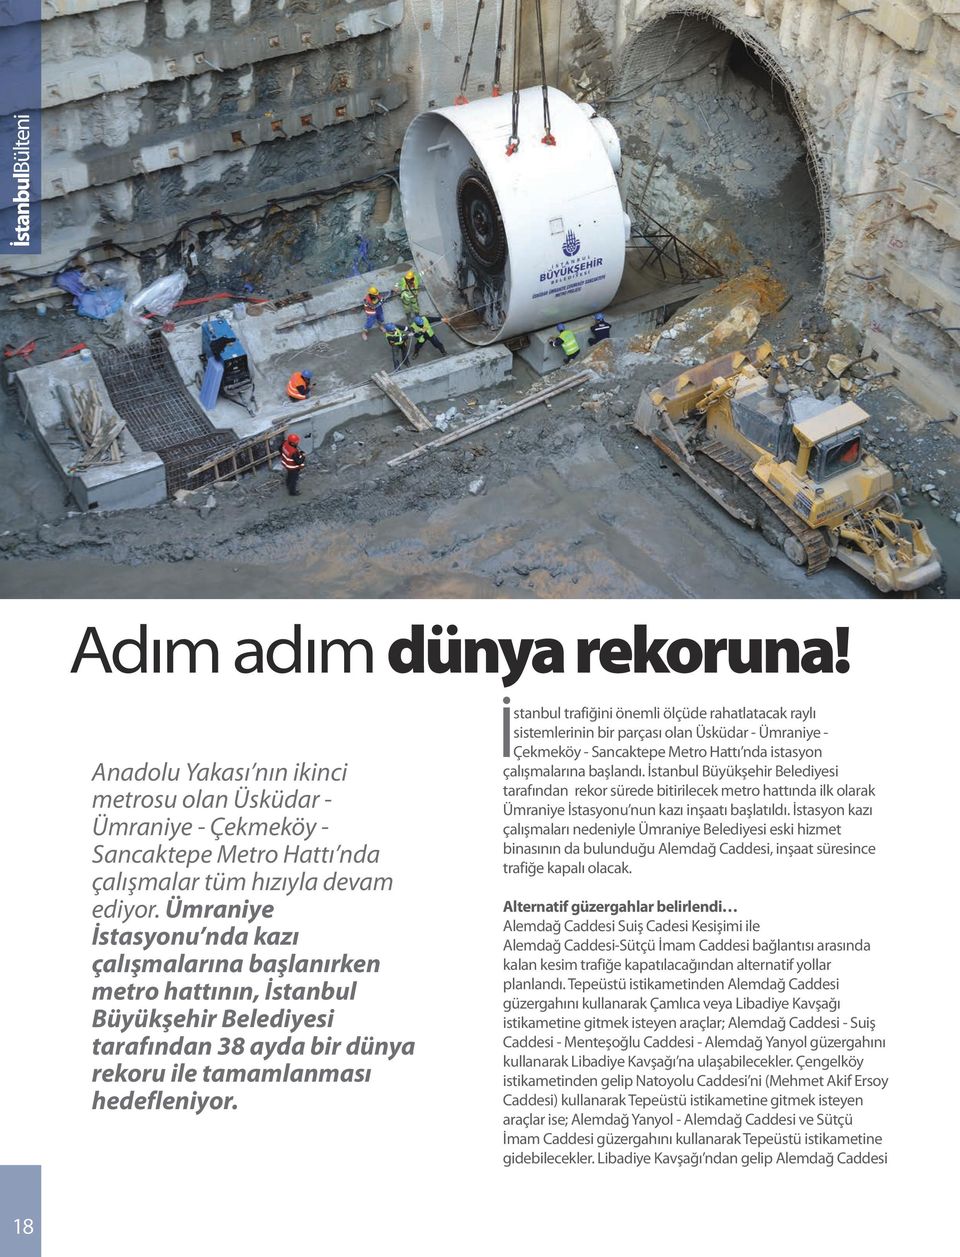 İstanbul trafiğini önemli ölçüde rahatlatacak raylı sistemlerinin bir parçası olan Üsküdar - Ümraniye - Çekmeköy - Sancaktepe Metro Hattı nda istasyon çalışmalarına başlandı.